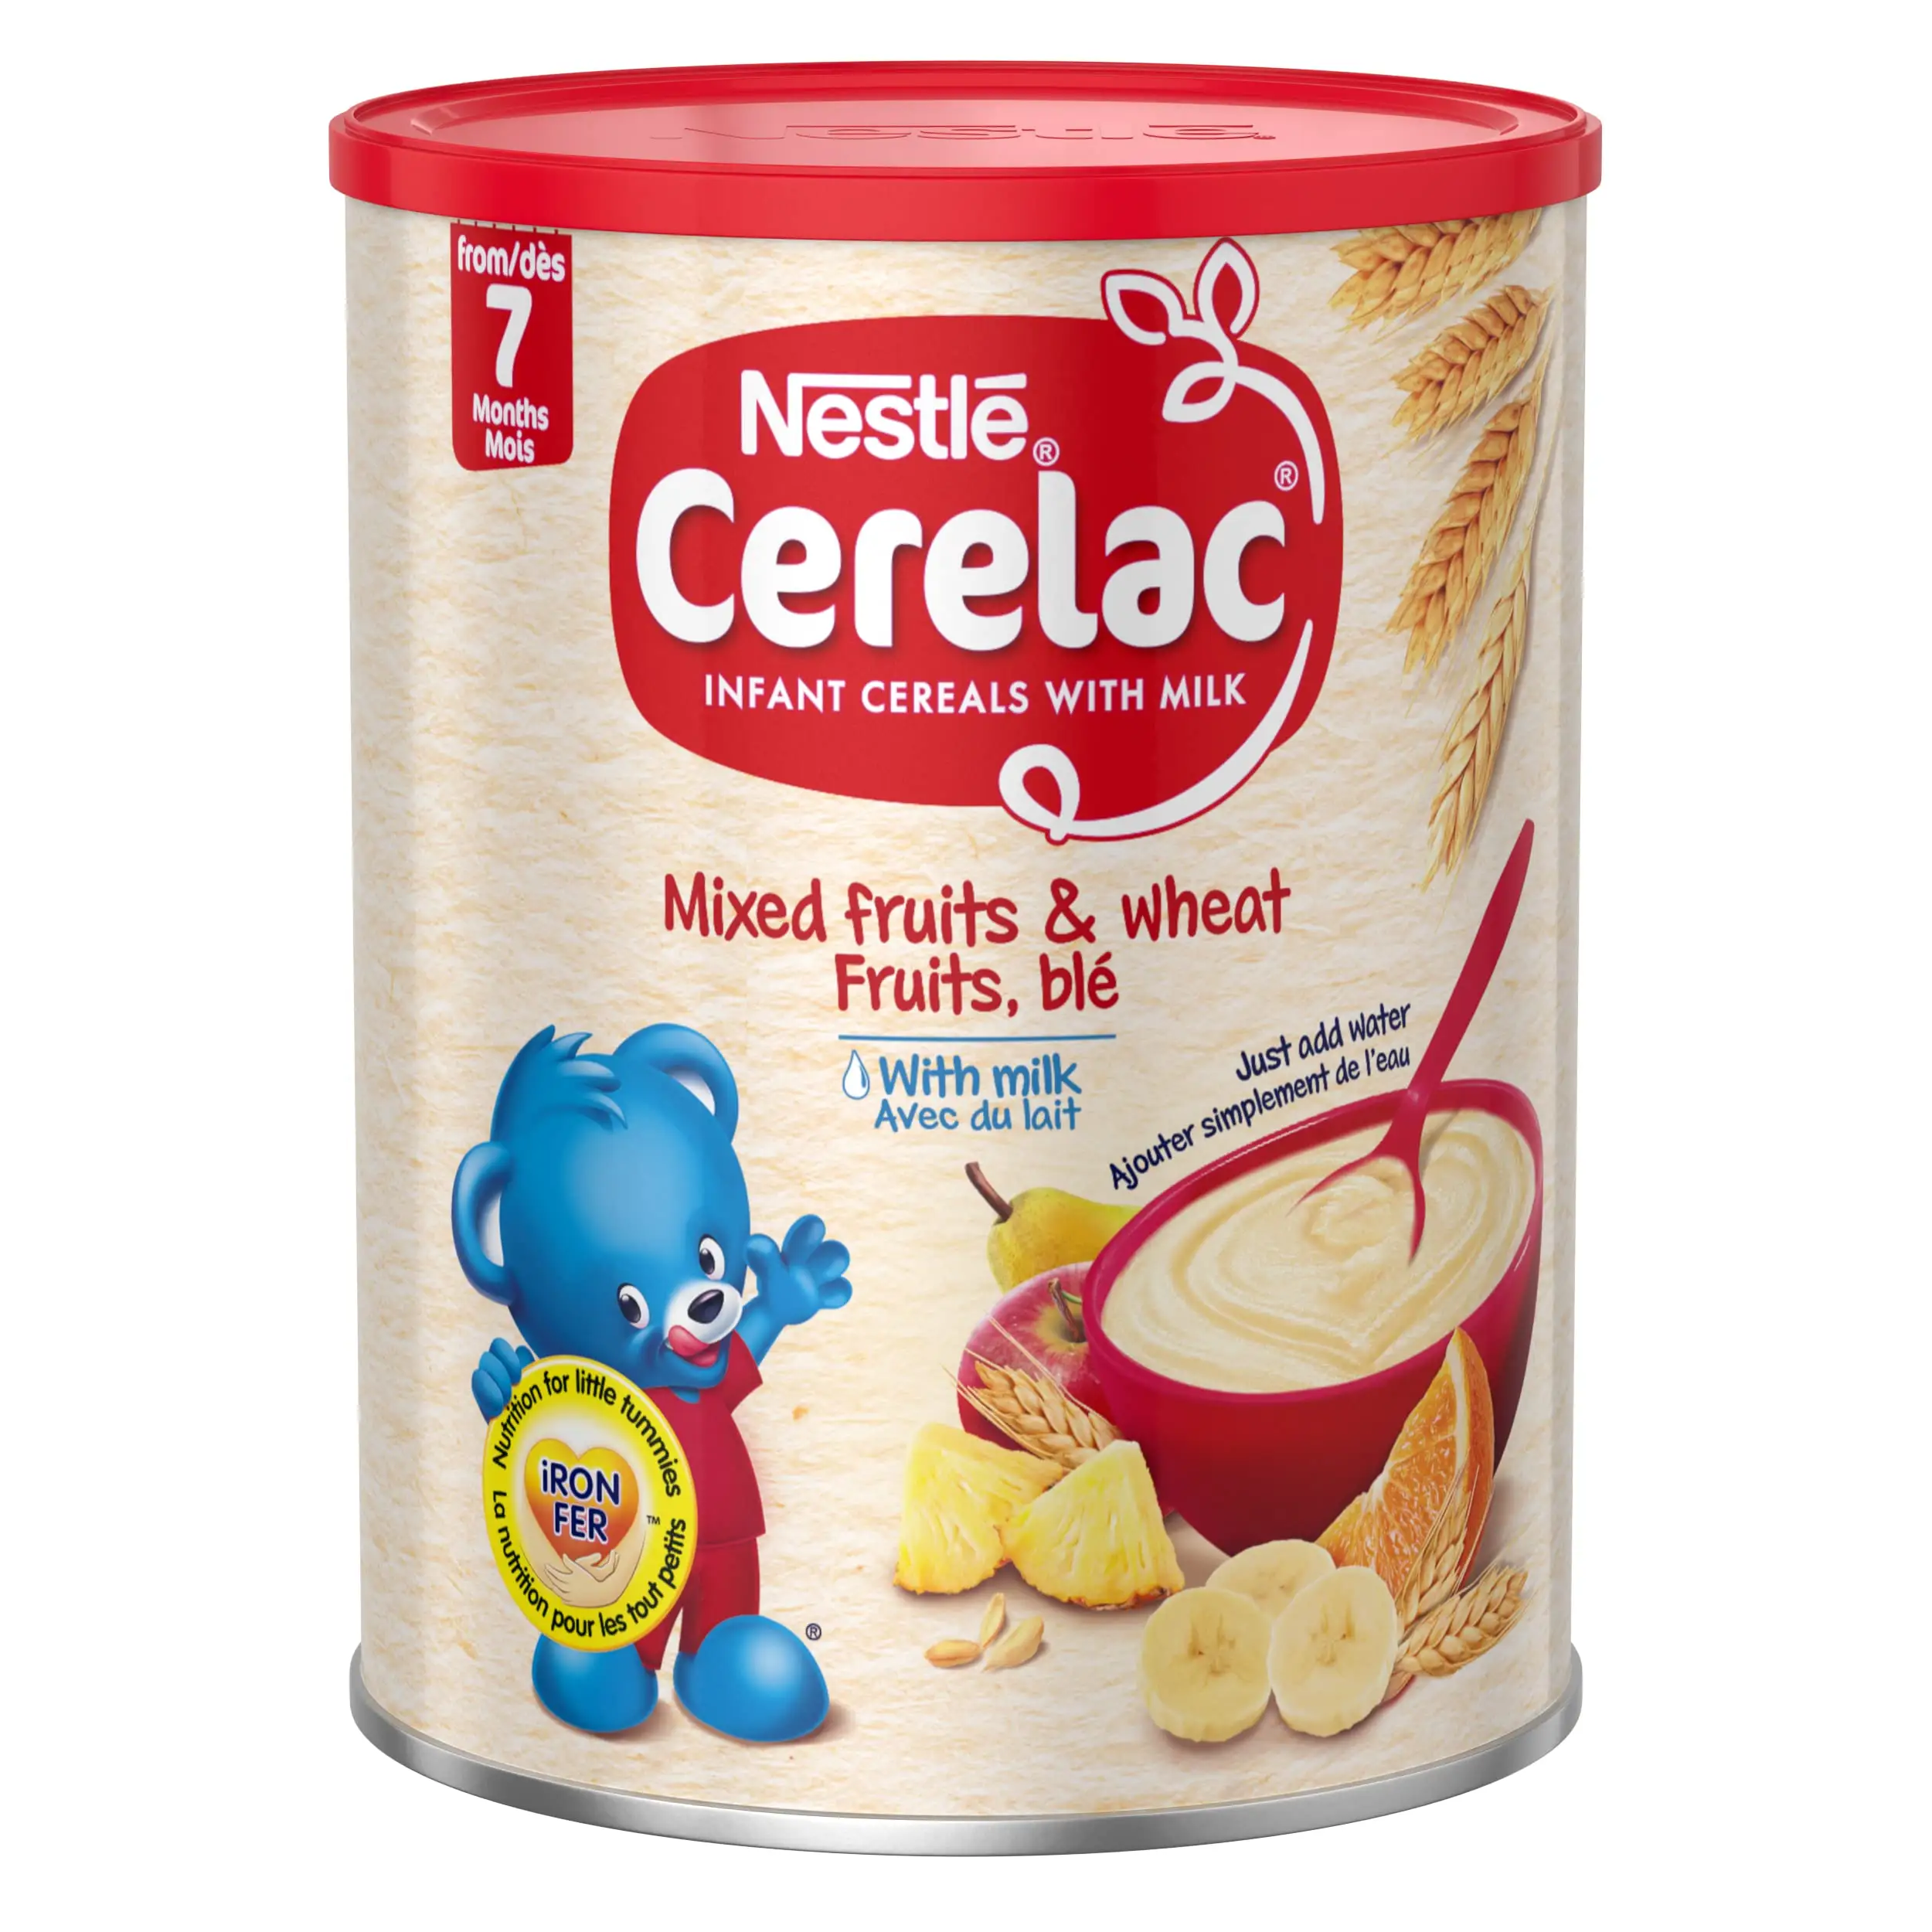 Nestle Cerelac-miel y trigo para bebé, arroz, frutas mezcladas, cereales infantil con leche